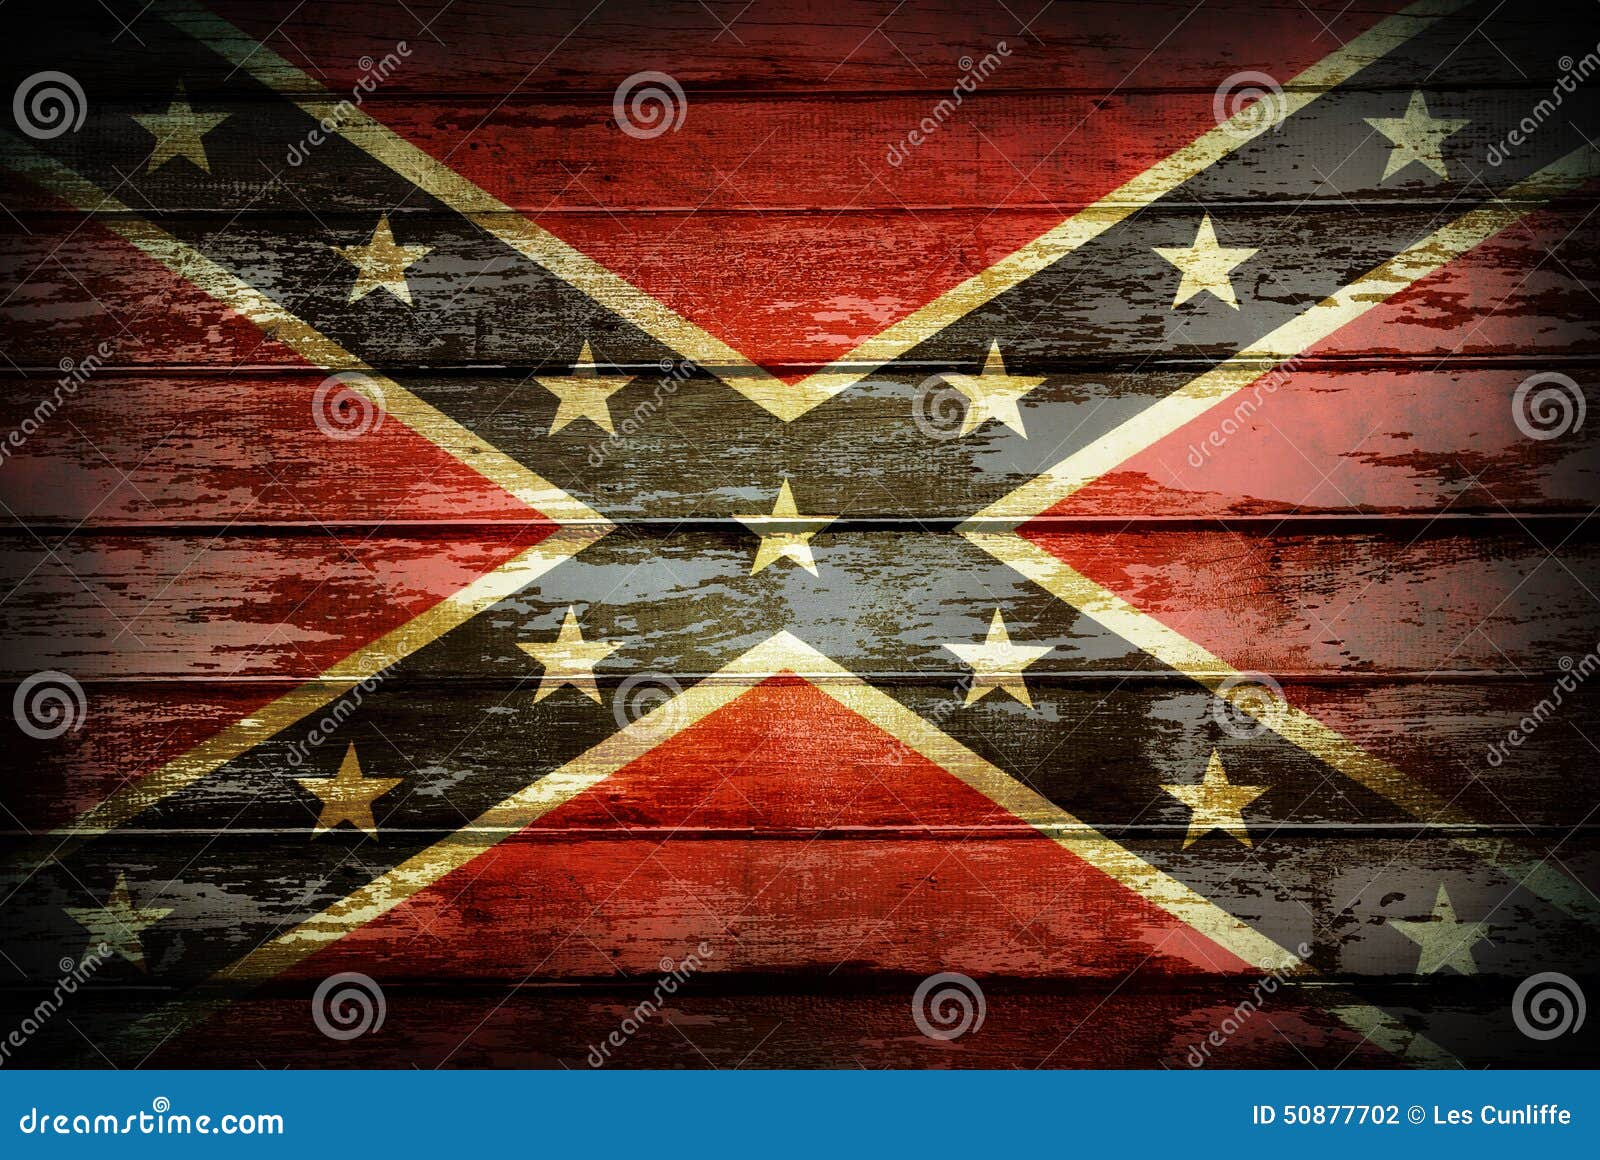 confederate flag